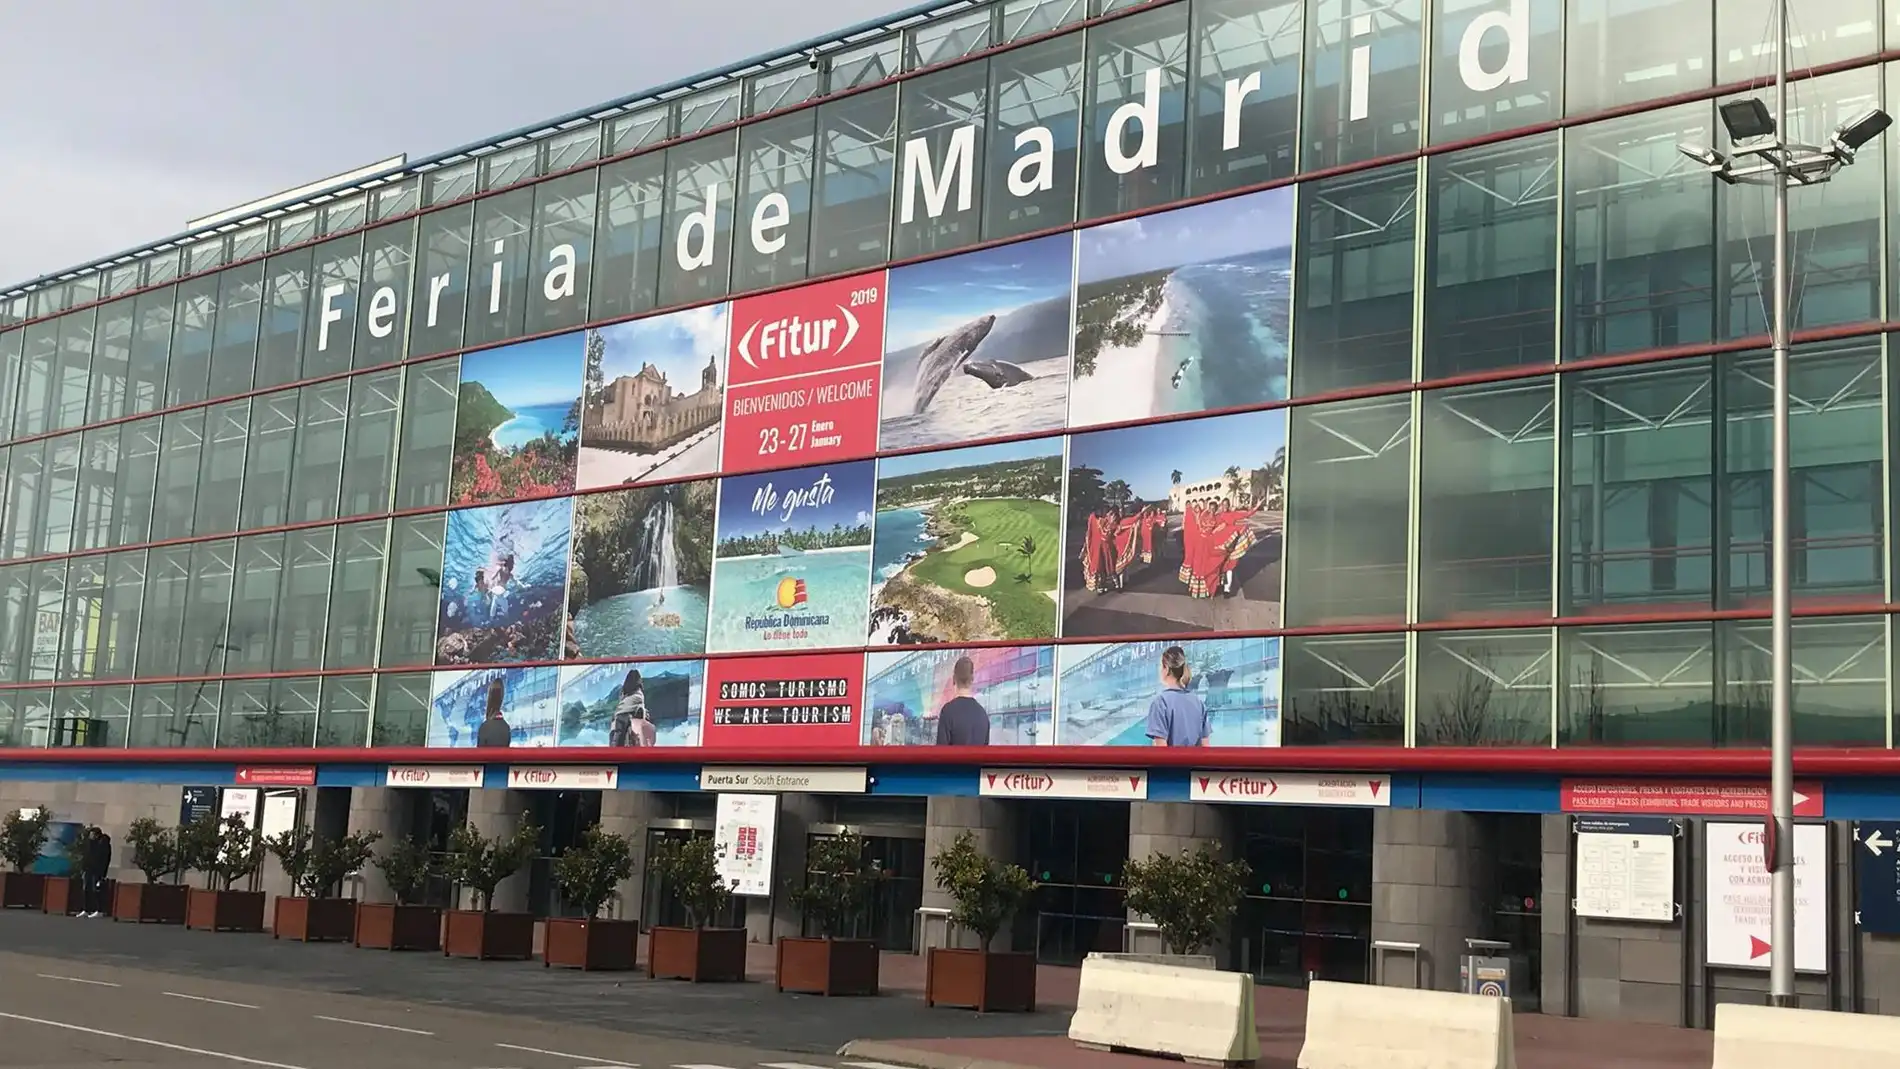 Fitur 2020: Horario, programa y actividades de la Feria de Turismo de Madrid